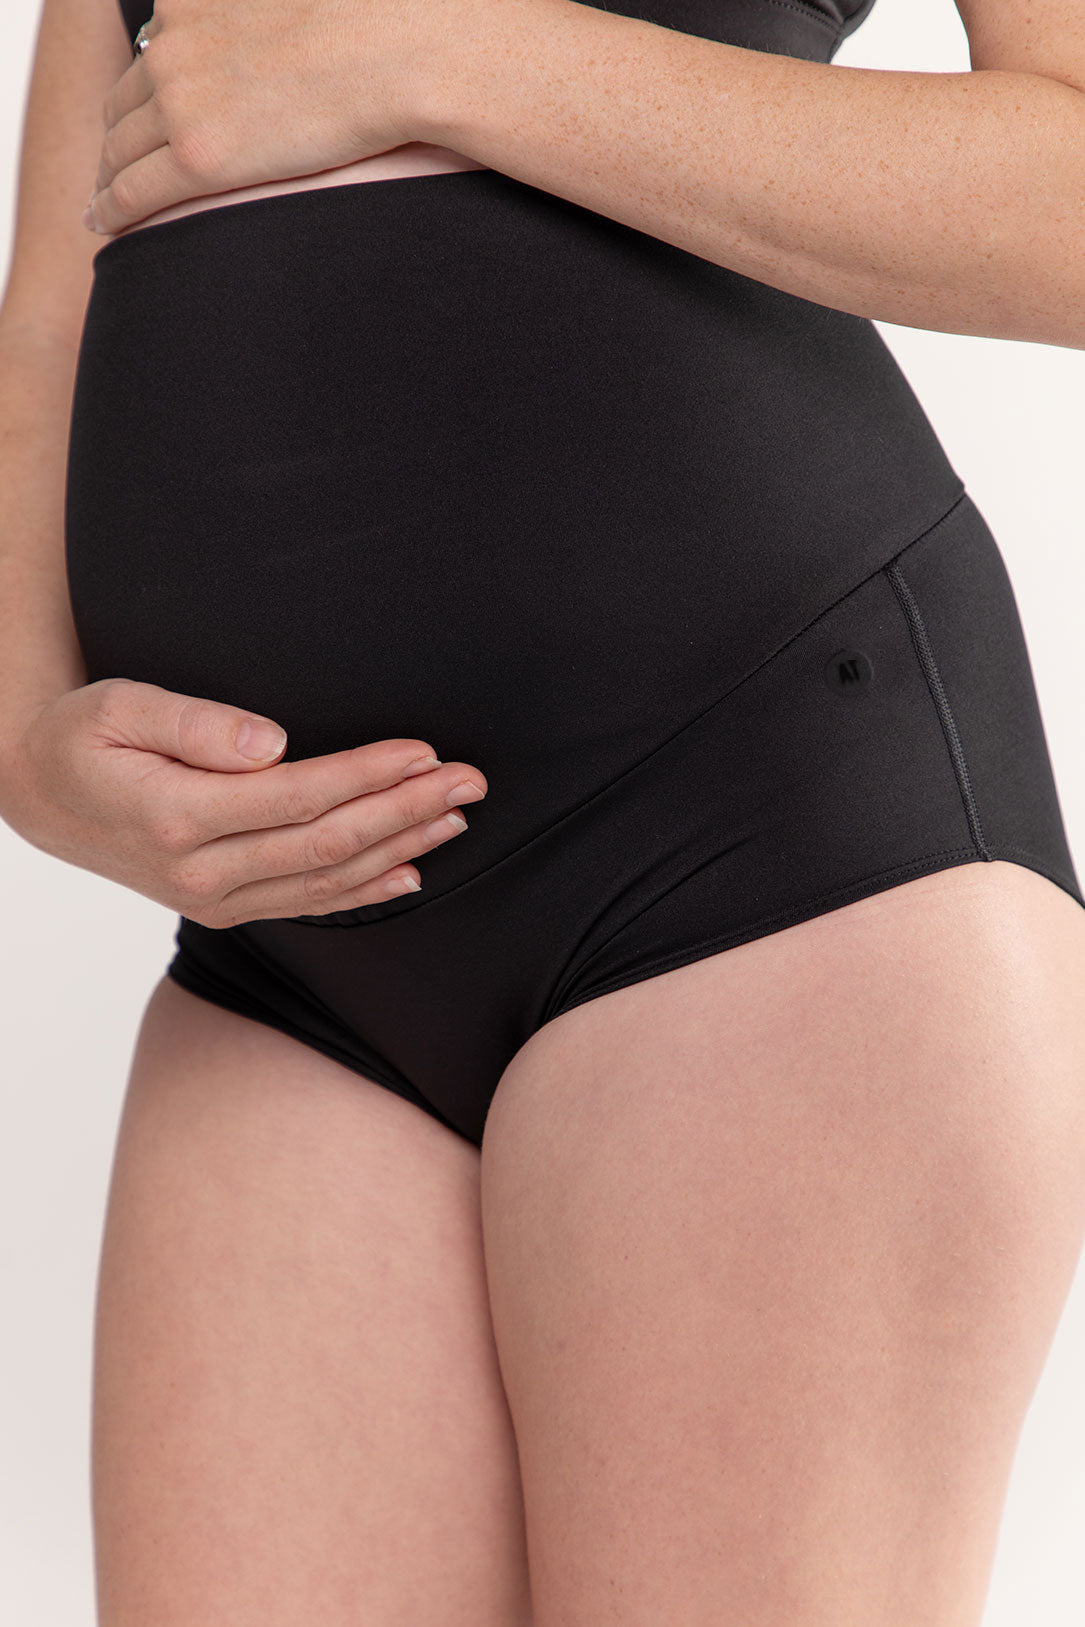 Supportive Pregnancy Underwear